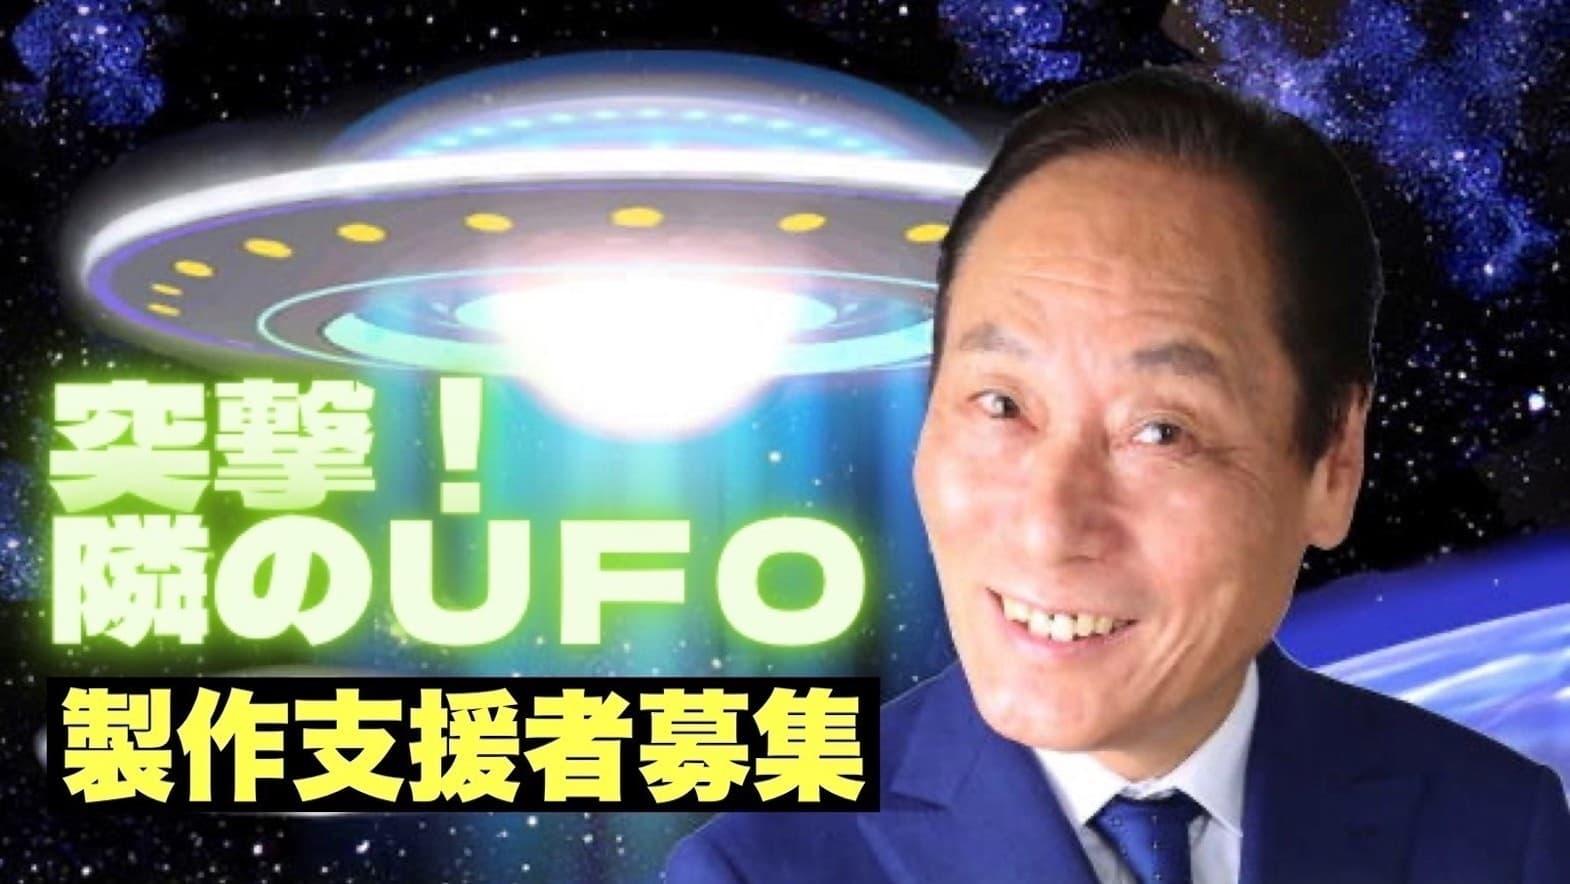 A UFO Intruder backdrop